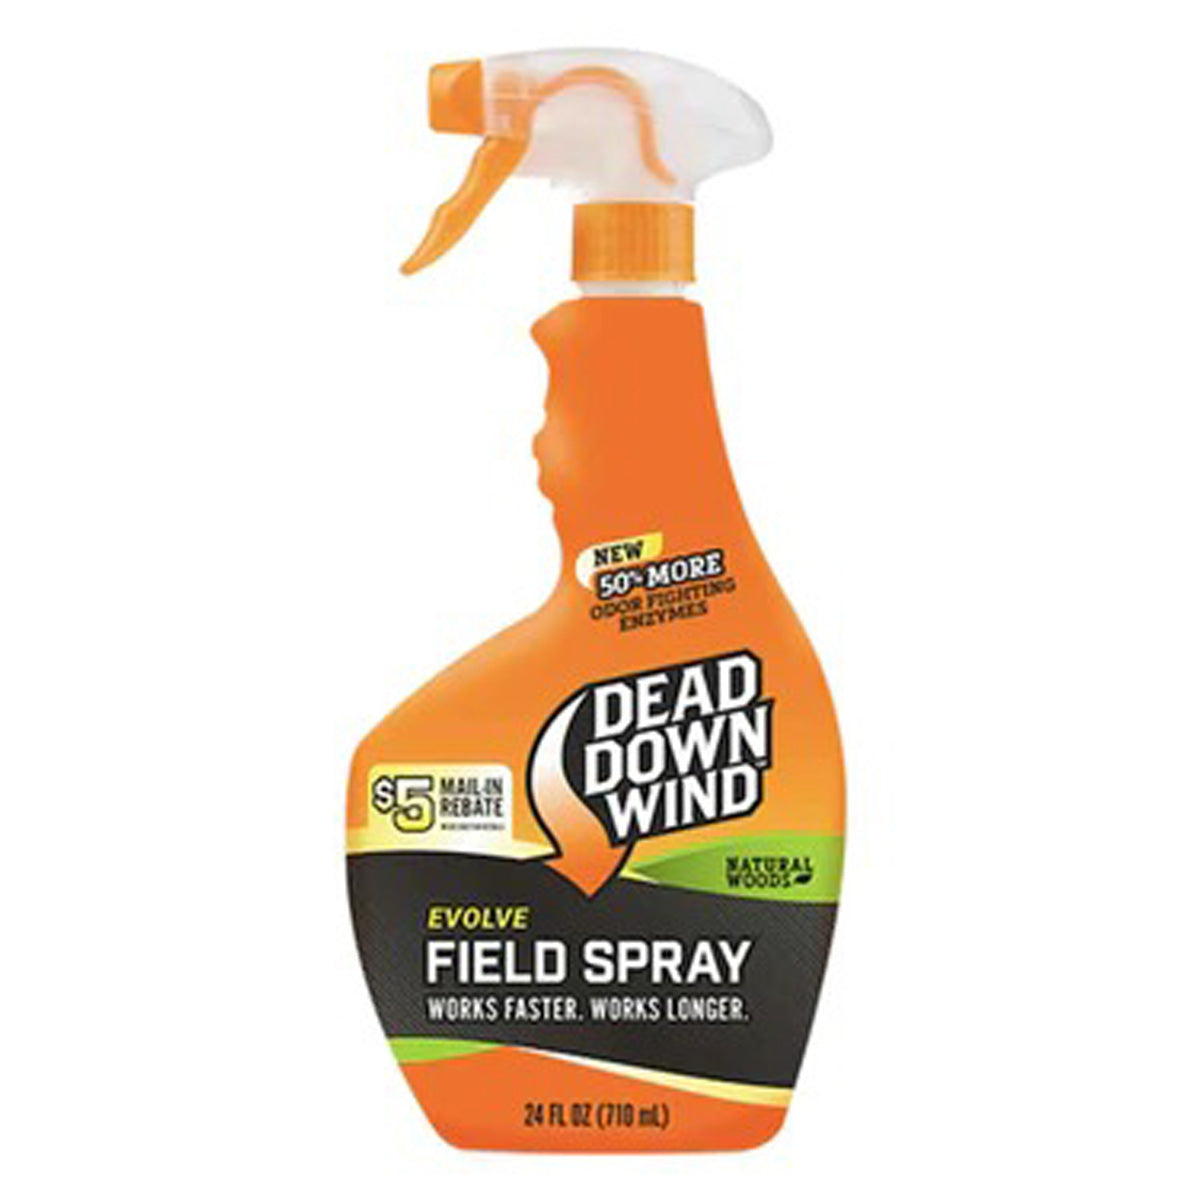 Dead Down Wind Field Spray